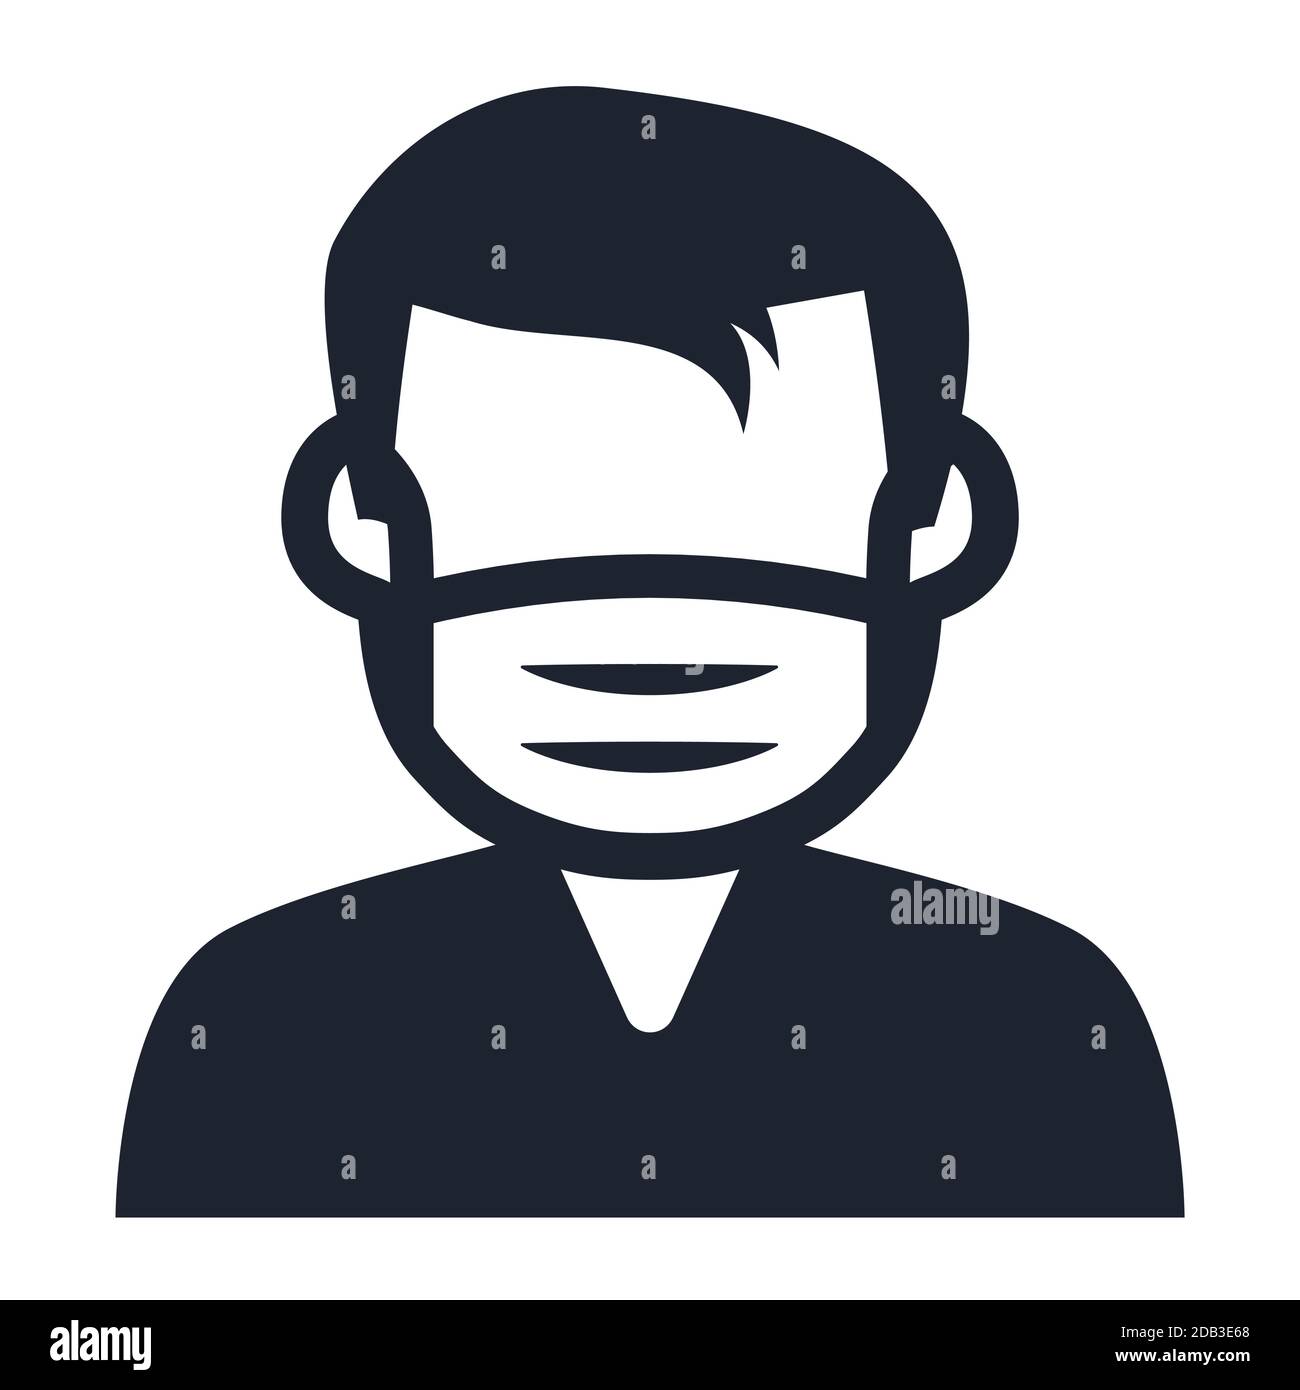 L'uomo indossa una maschera facciale per il simbolo di protezione da virus o. illustrazione vettoriale delle icone Illustrazione Vettoriale